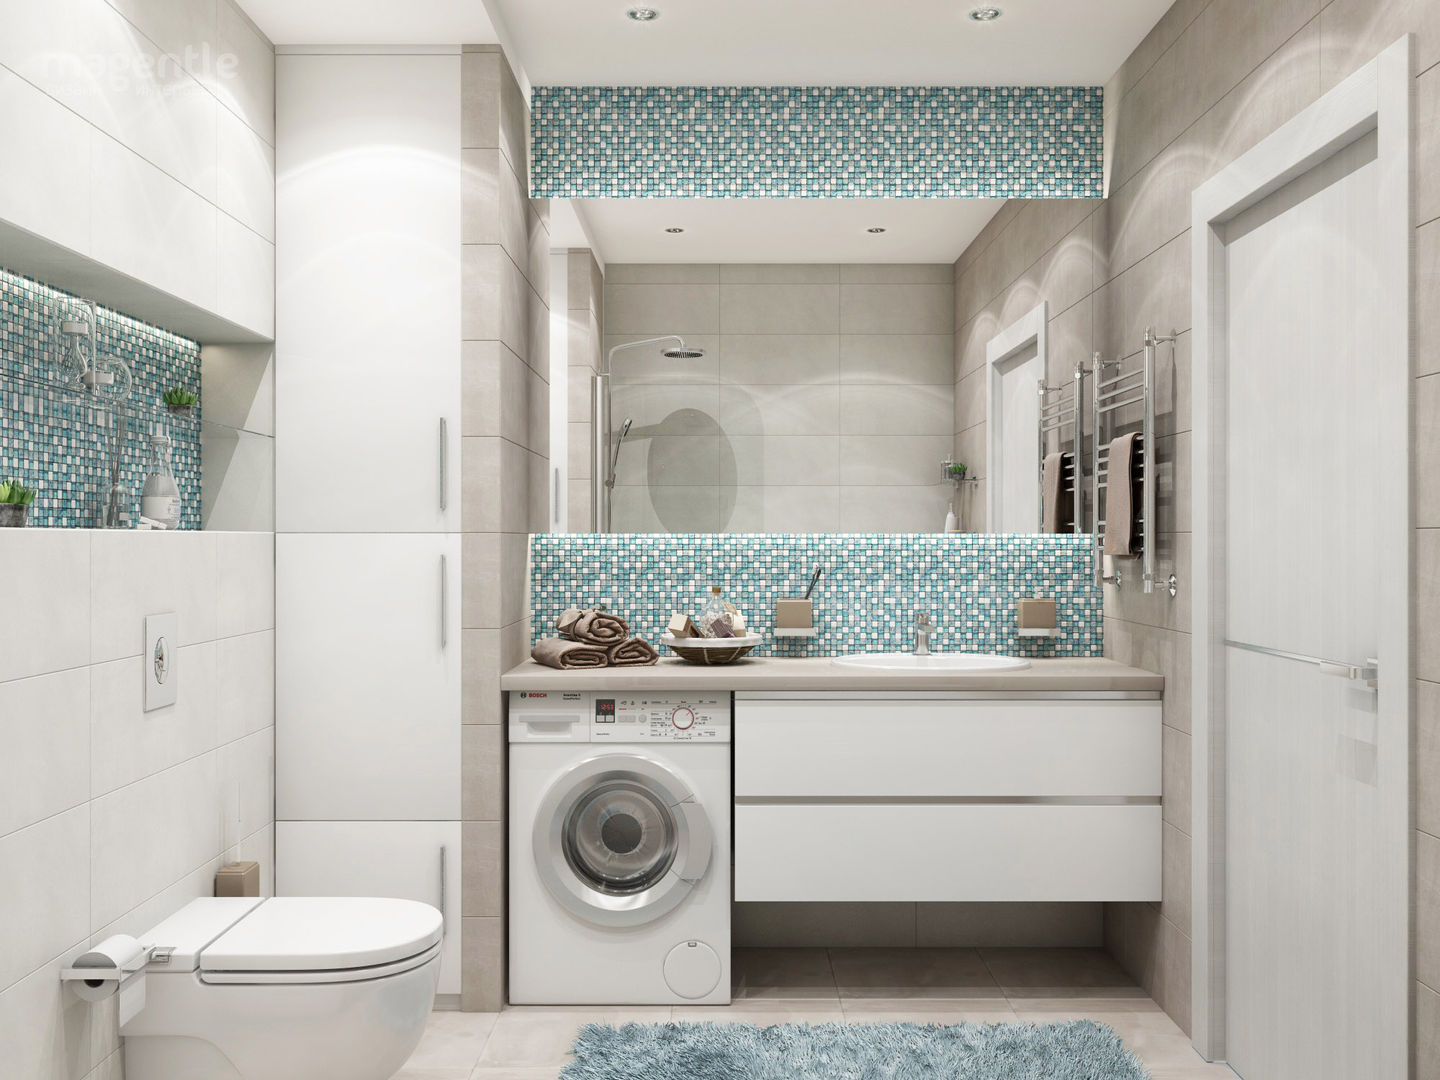 Лескова, MAGENTLE MAGENTLE Minimalist style bathrooms Tiles